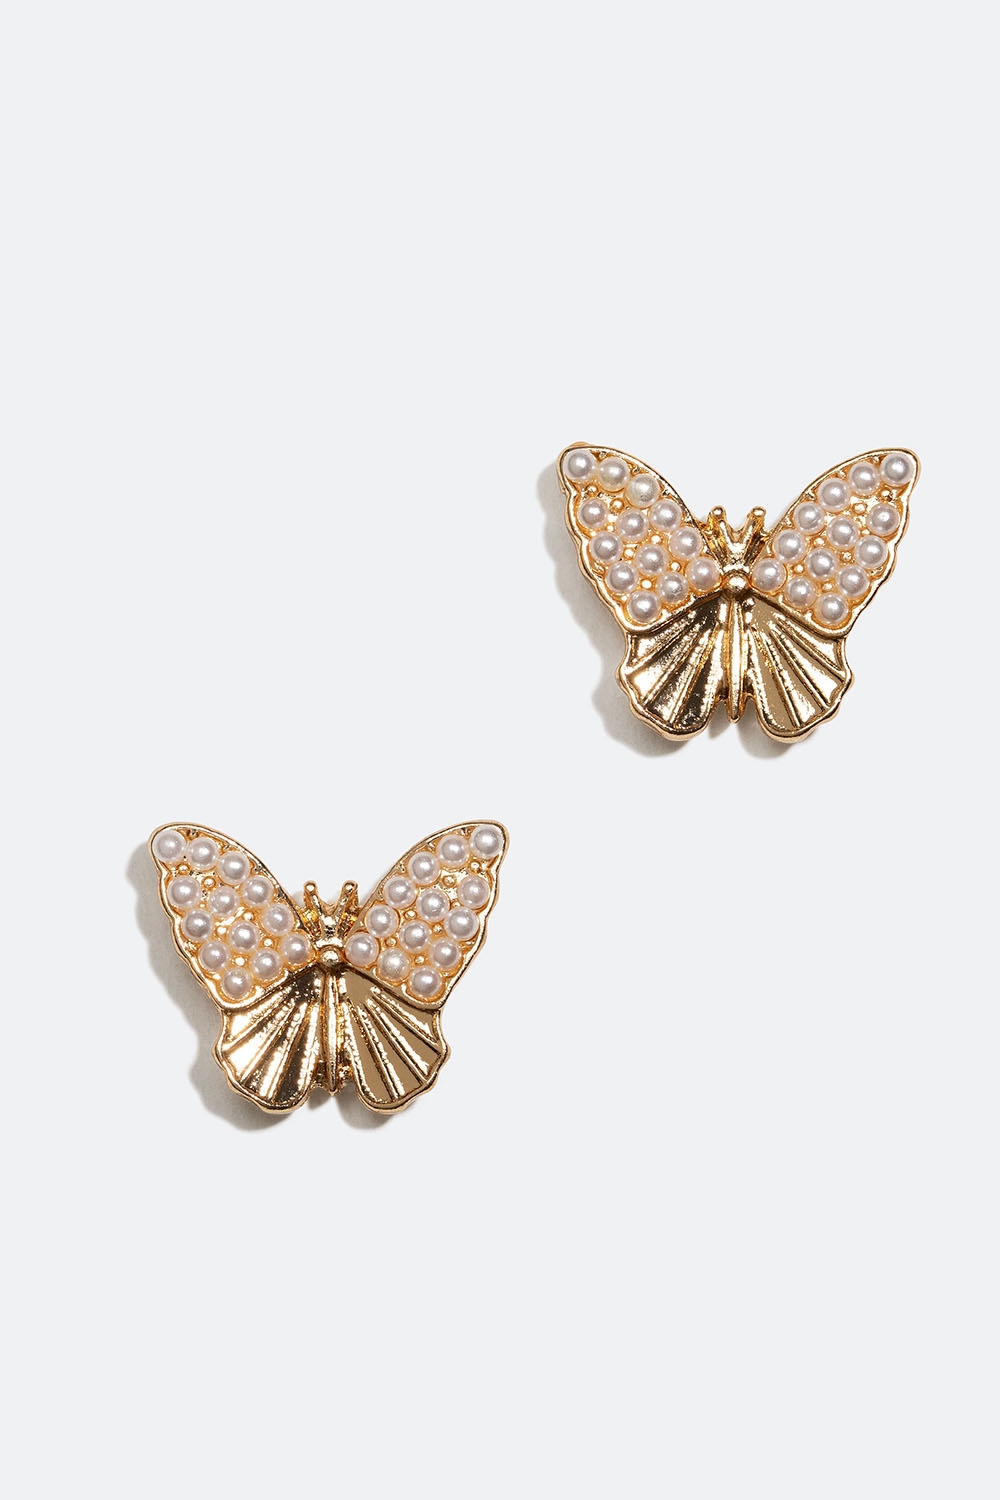 Kullanväriset nappikorvakorut, joissa perhosia ja helmiä ryhmässä Korut / Korvakorut / Nappikorvakorut @ Glitter (253005732002)